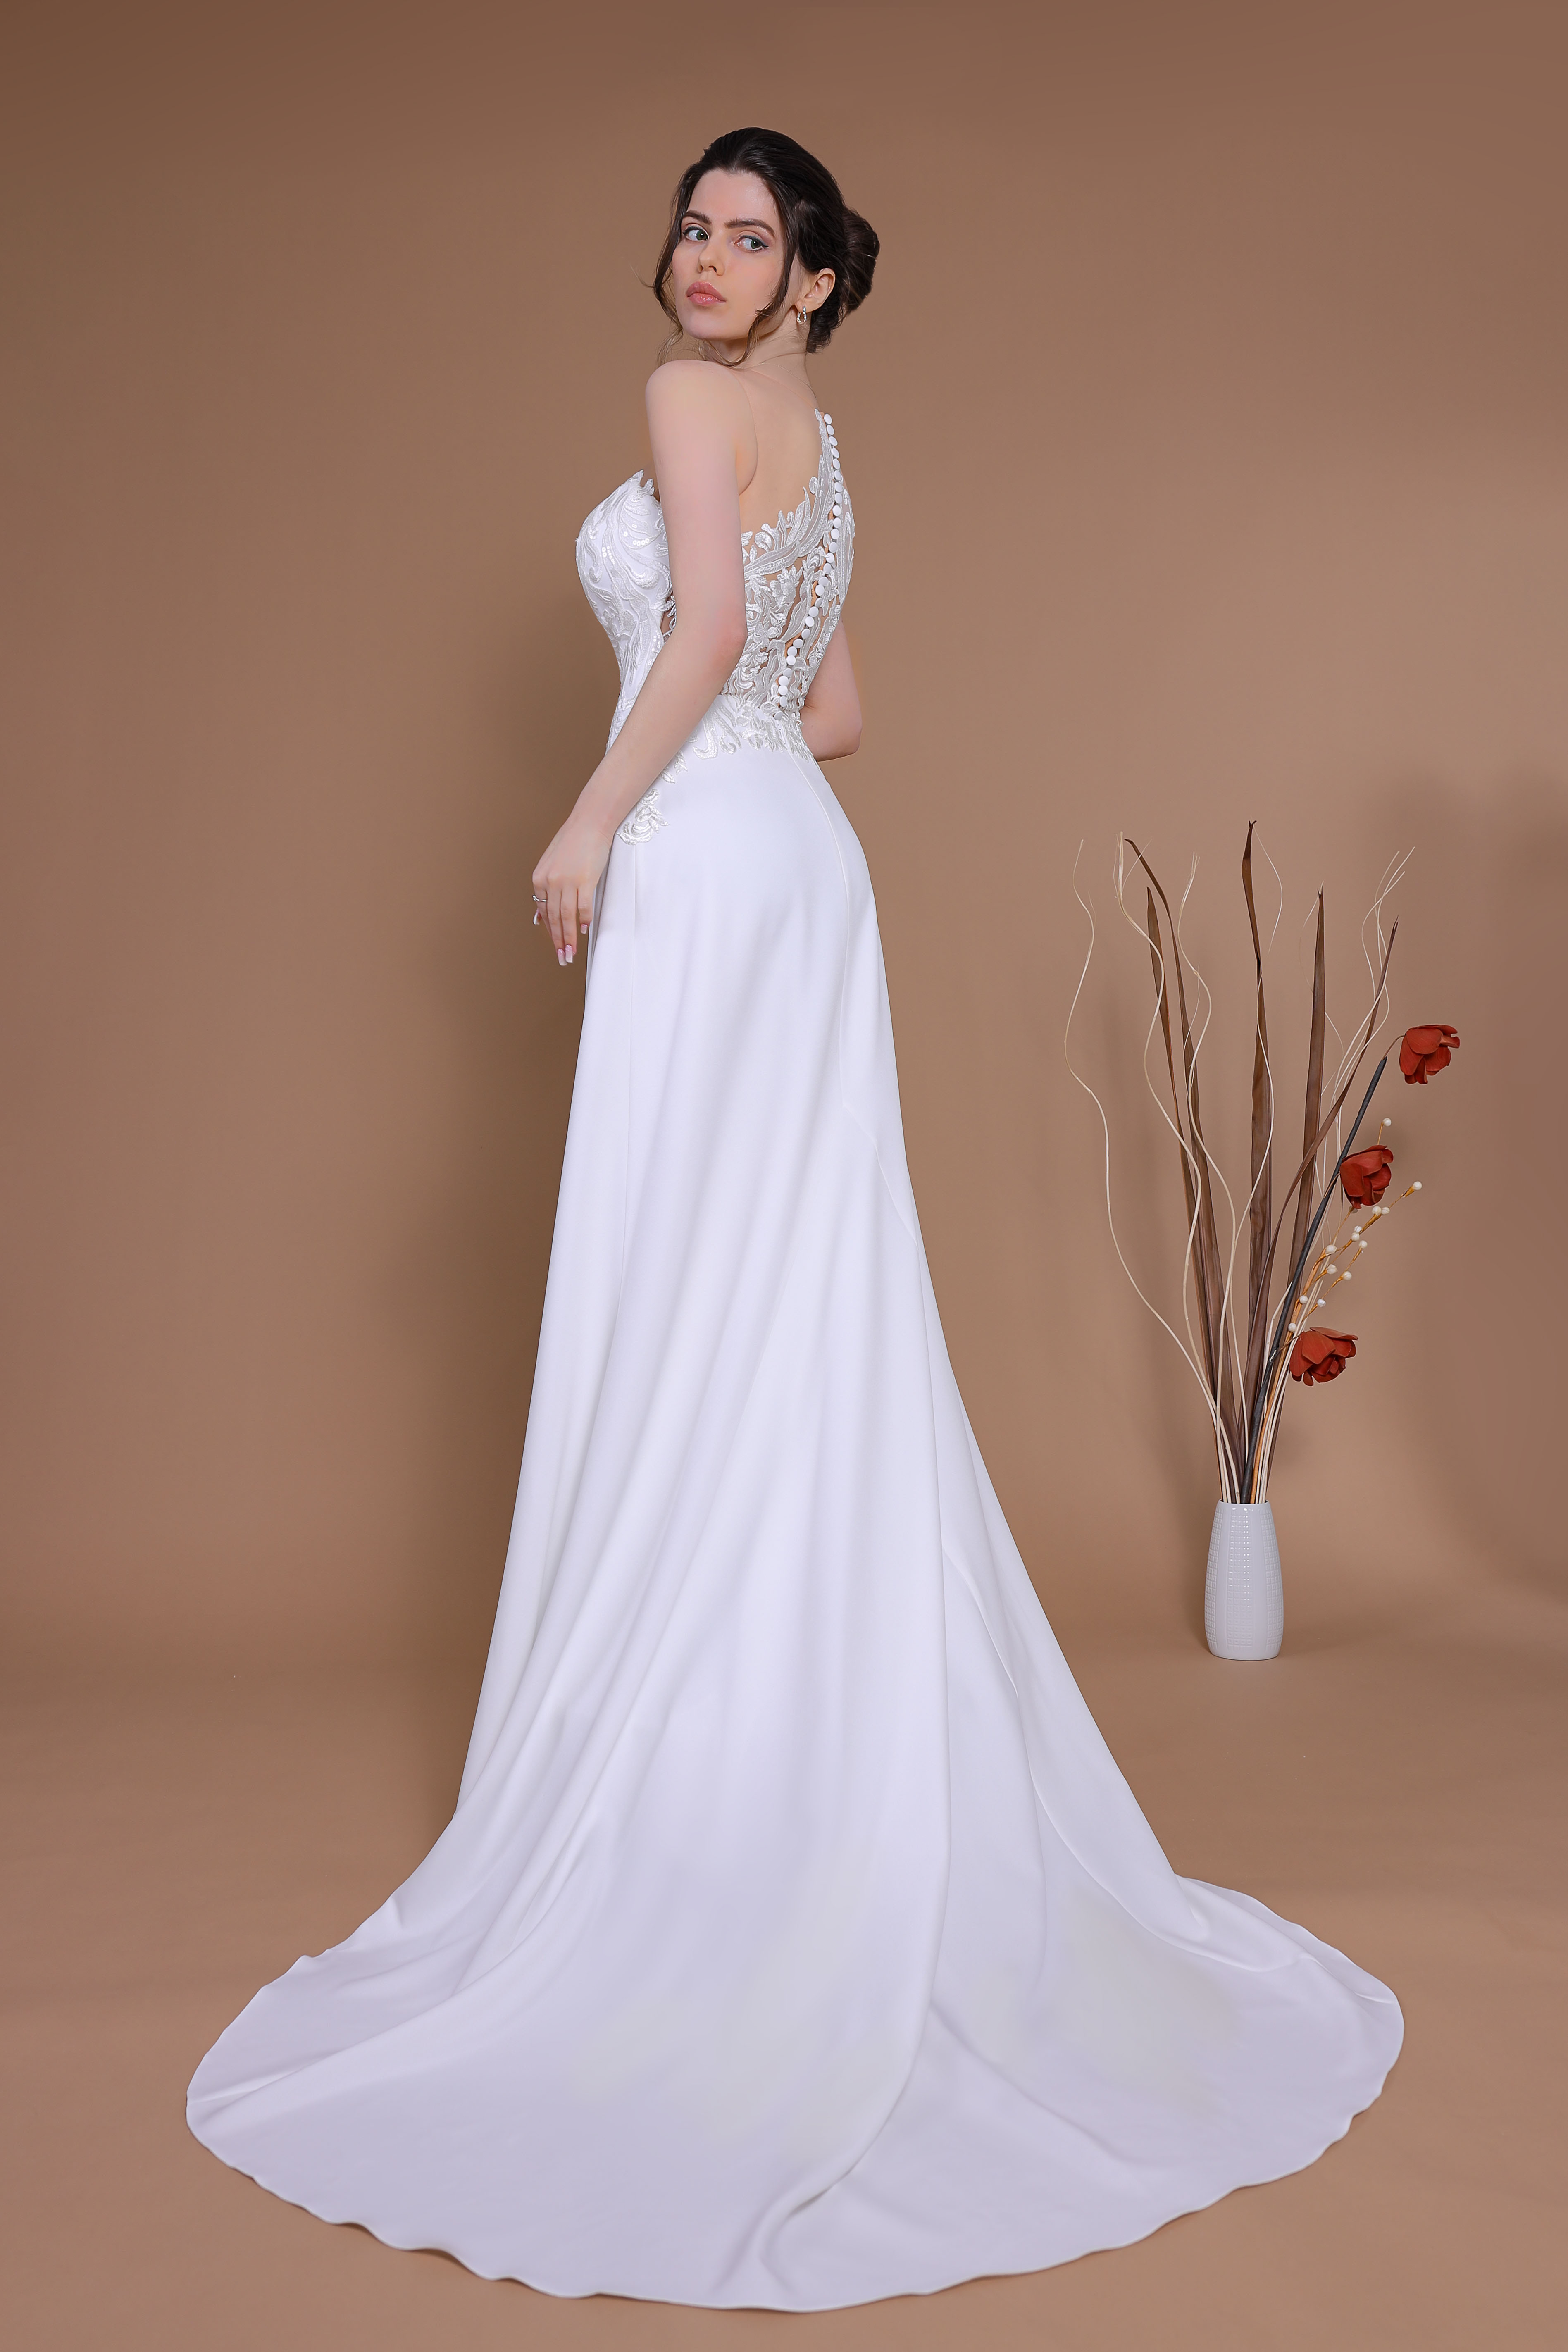 Schantal Brautkleid aus der Kollektion „Traum“, Modell 28030 - 2. Foto 4